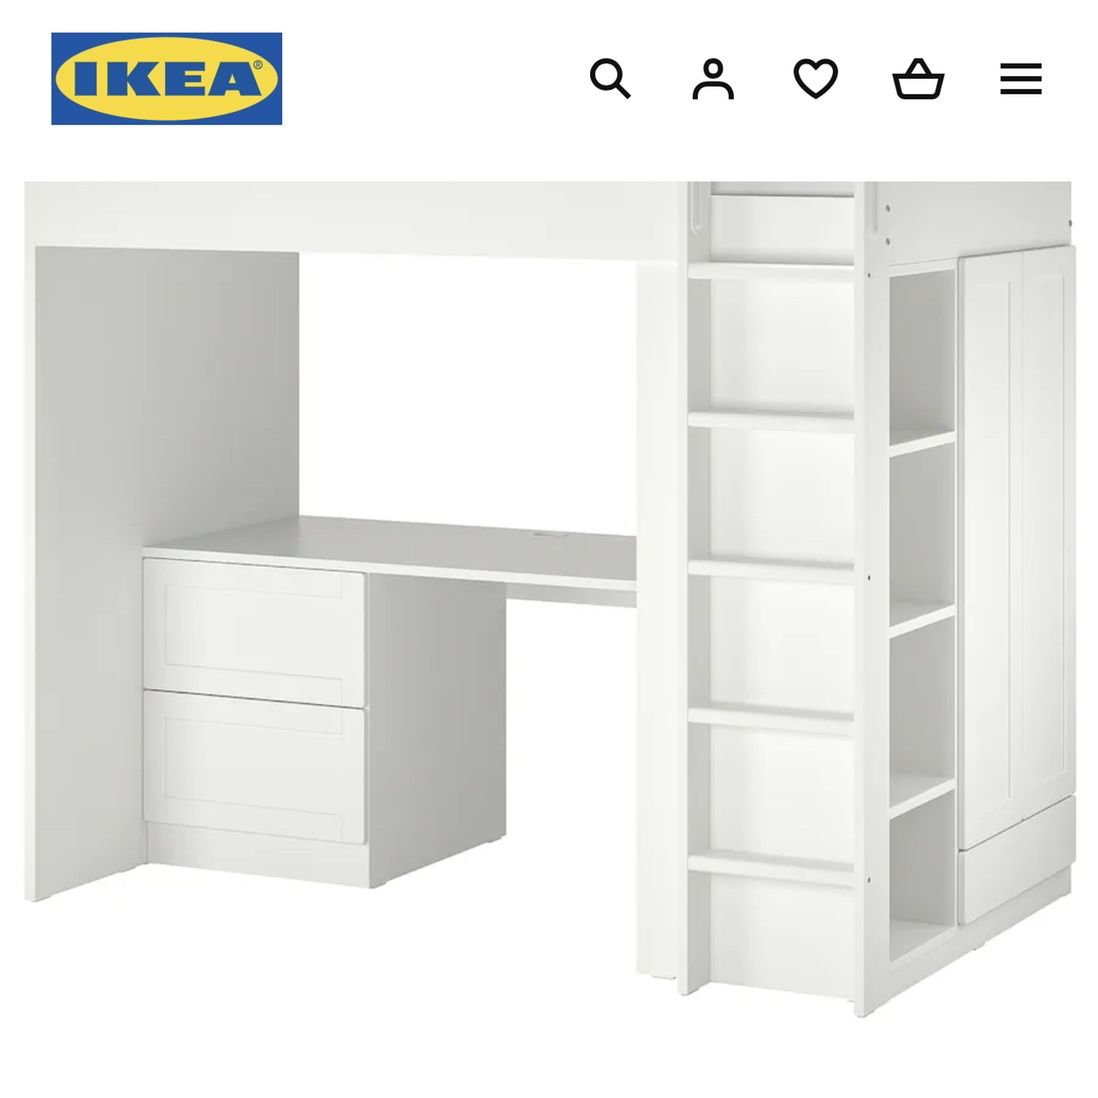 IKEA Twin Loft Bed